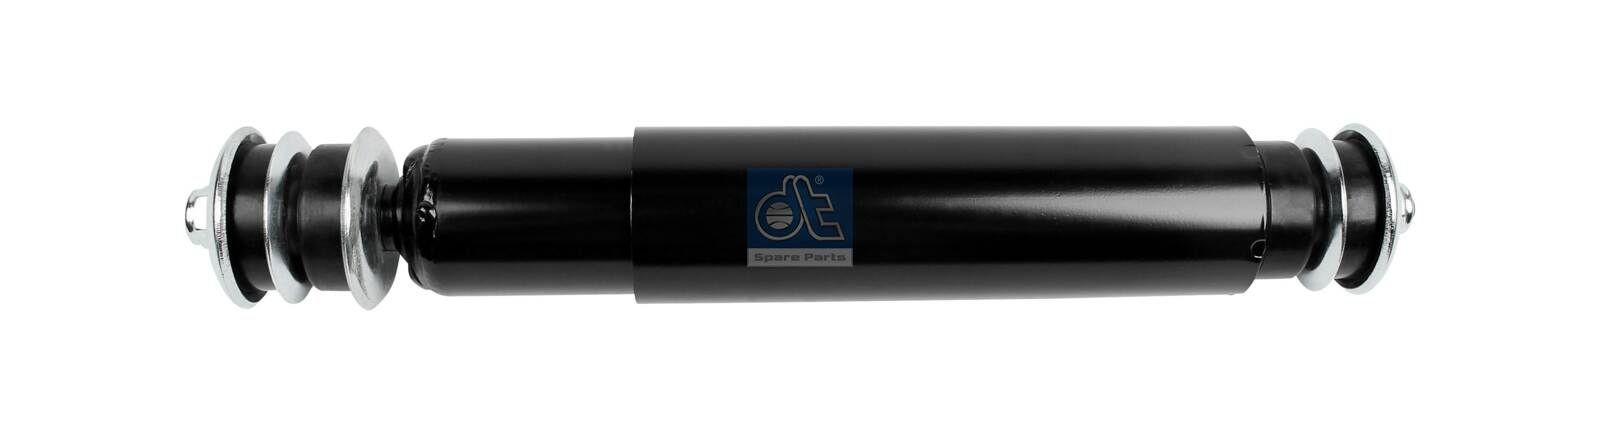 B5290 DT Spare Parts Hinterachse, Öldruck, Teleskop-Stoßdämpfer, oben Stift, unten Stift Stoßdämpfer 1.25814 kaufen